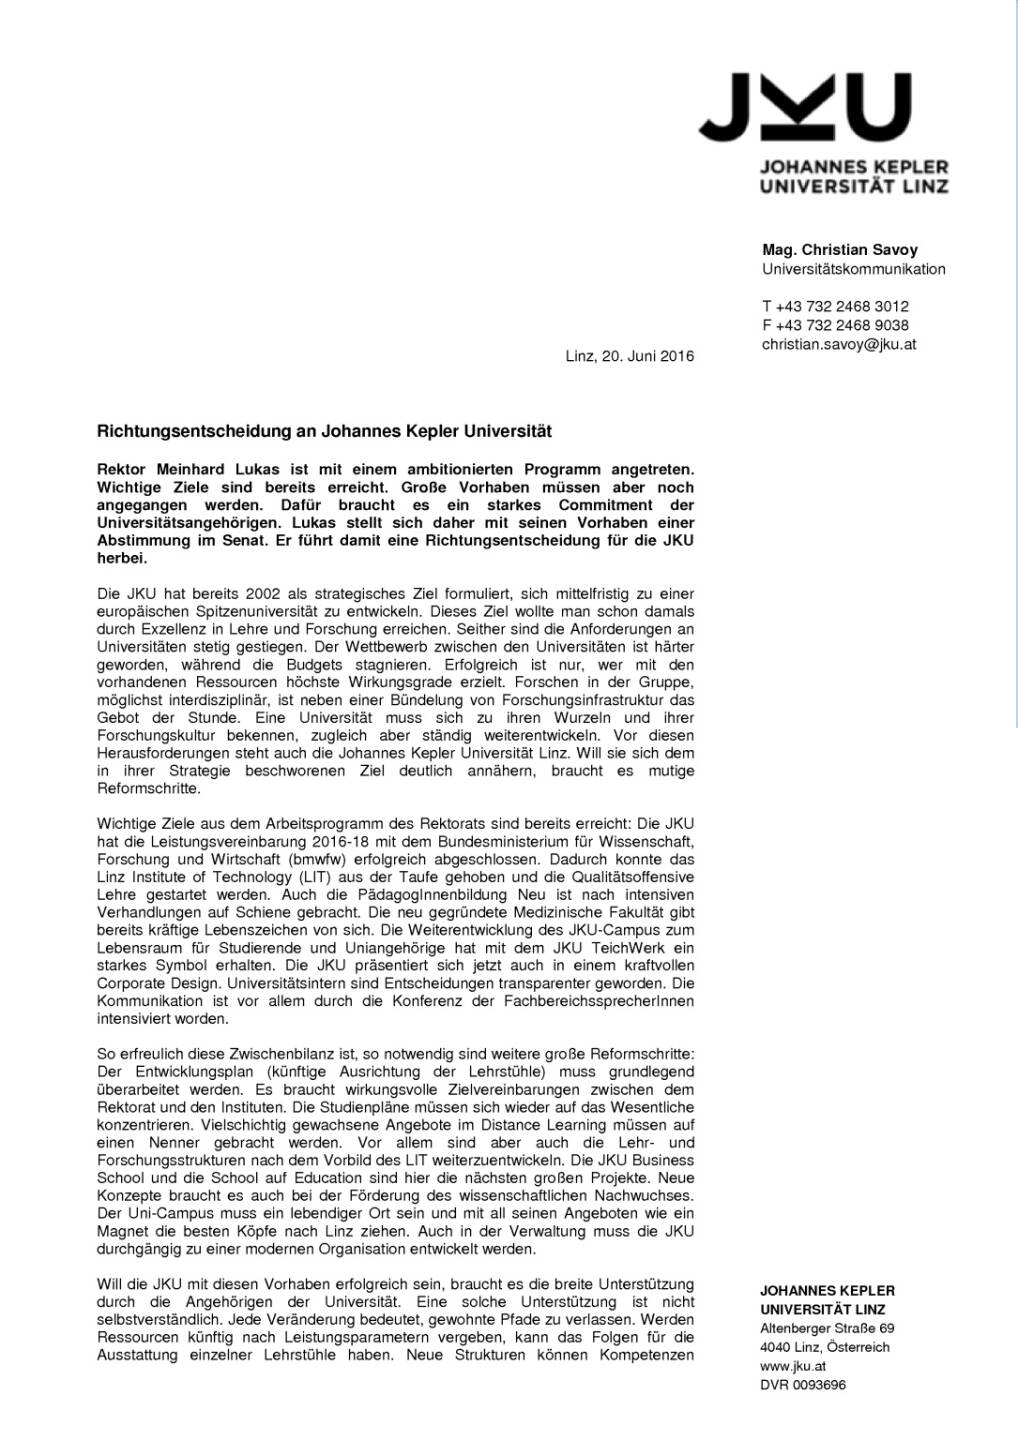 Johannes Kepler Universität Linz: Richtungsentscheidung, Seite 1/2, komplettes Dokument unter http://boerse-social.com/static/uploads/file_1236_johannes_kepler_universitat_linz_richtungsentscheidung.pdf